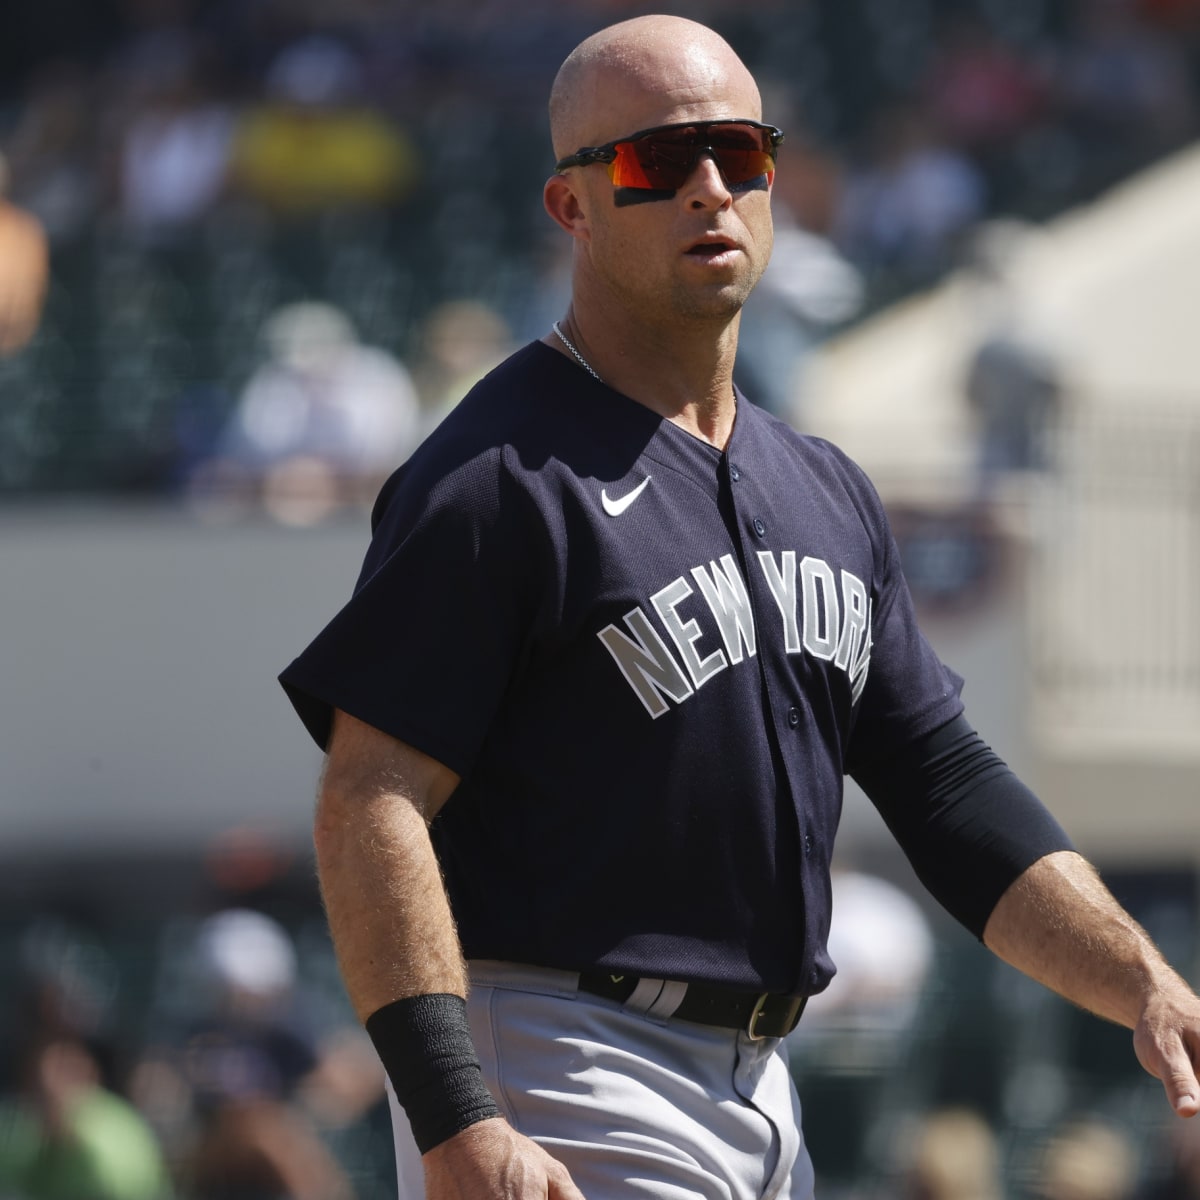 Brett Gardner New York Yankees Authentic Home Jersey » Moiderer's Row :  Bronx Baseball